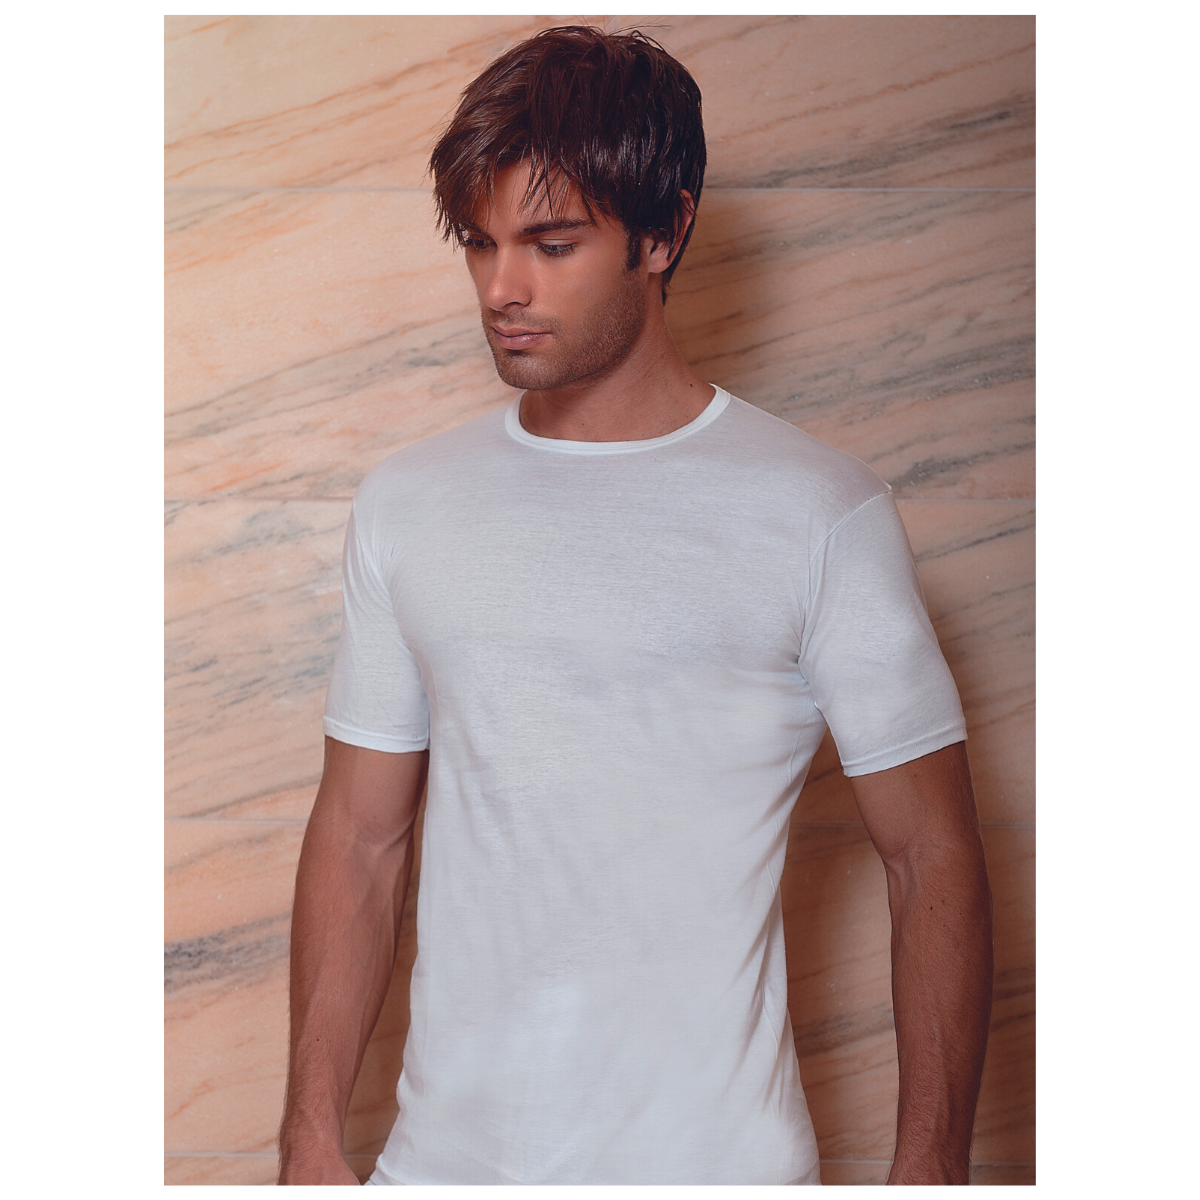 Maglietta intima uomo paricollo, mezza manica, bianco, cotone mercerizzato,  conf. da 3pz